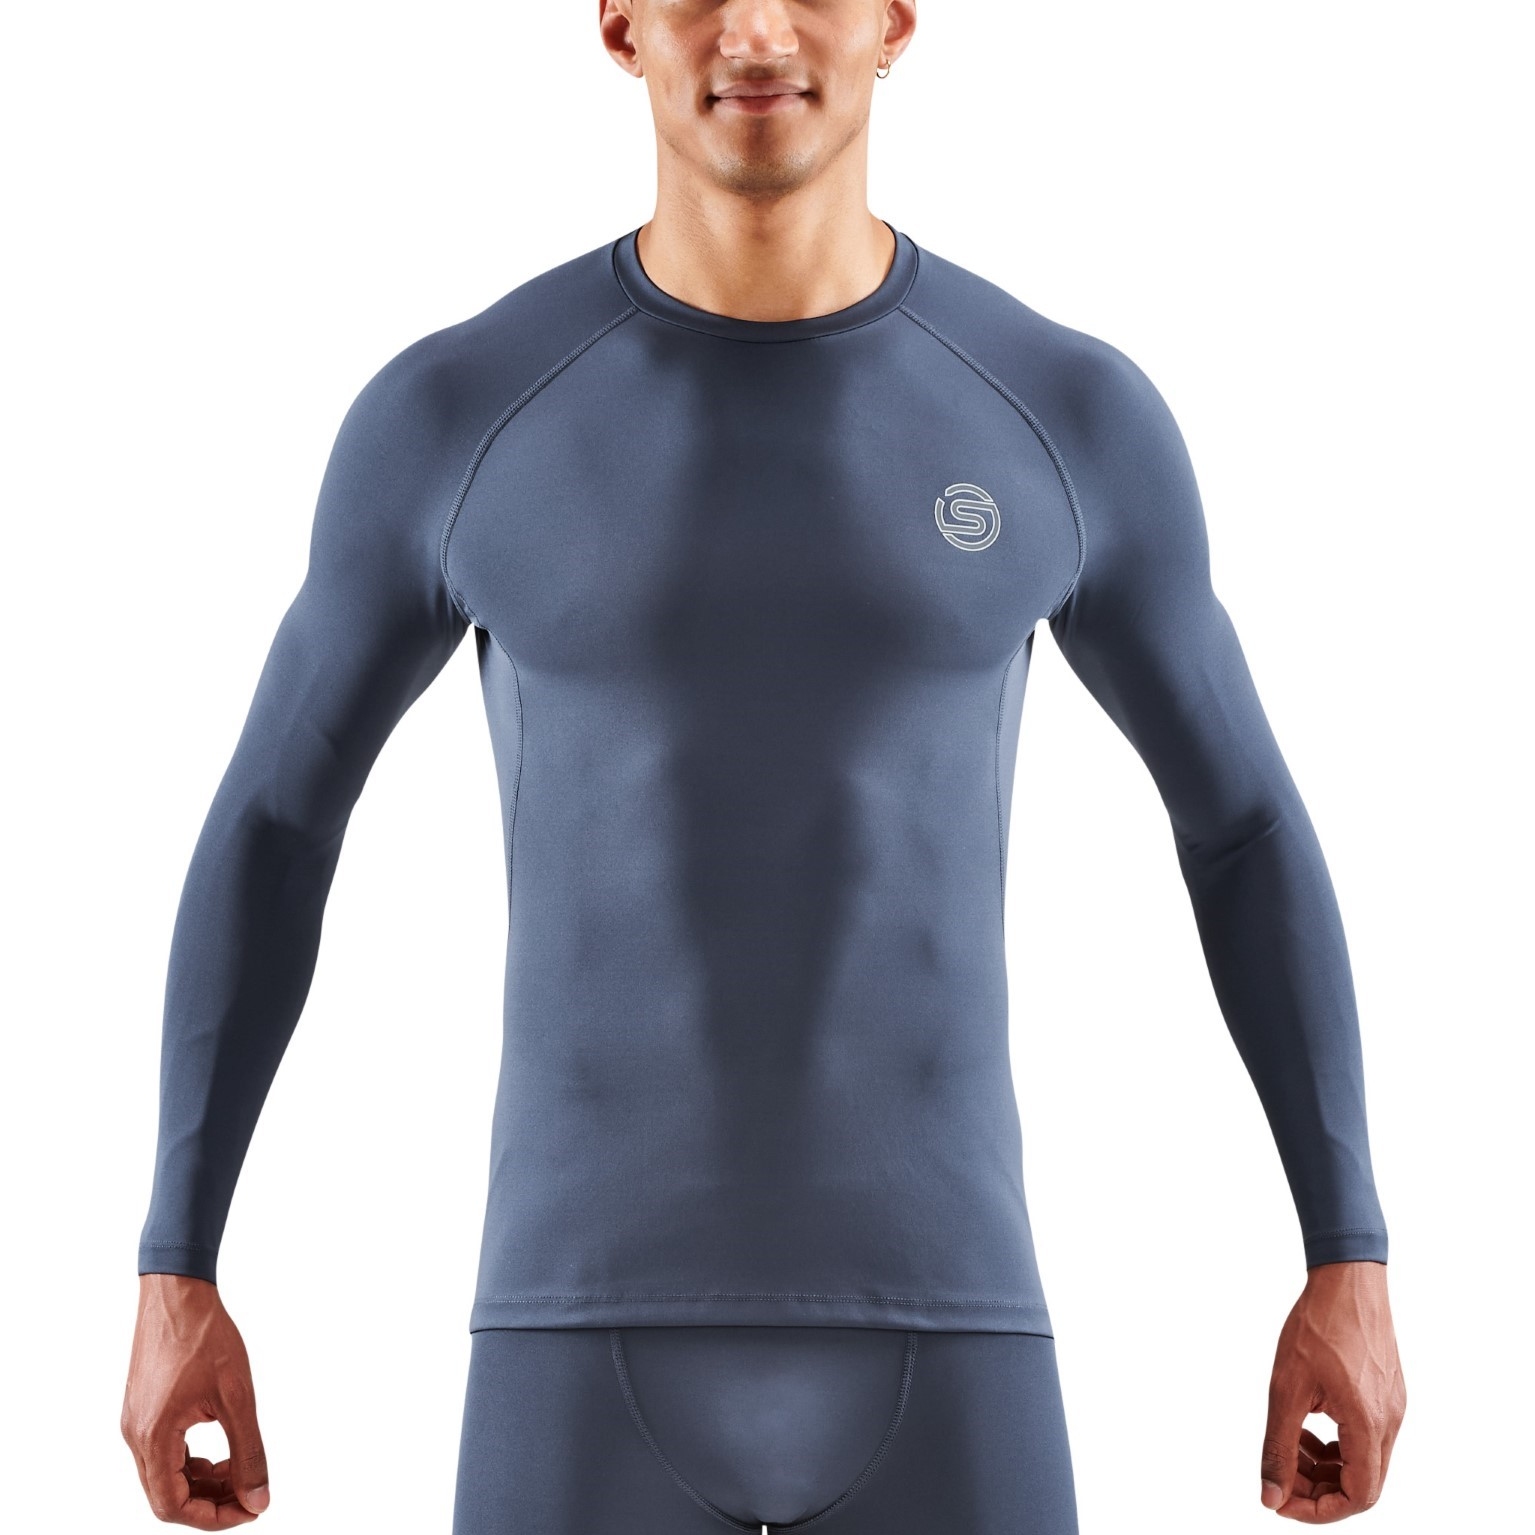 Produktbild von SKINS 2-Series Langarm-Shirt Herren - Navy Blue